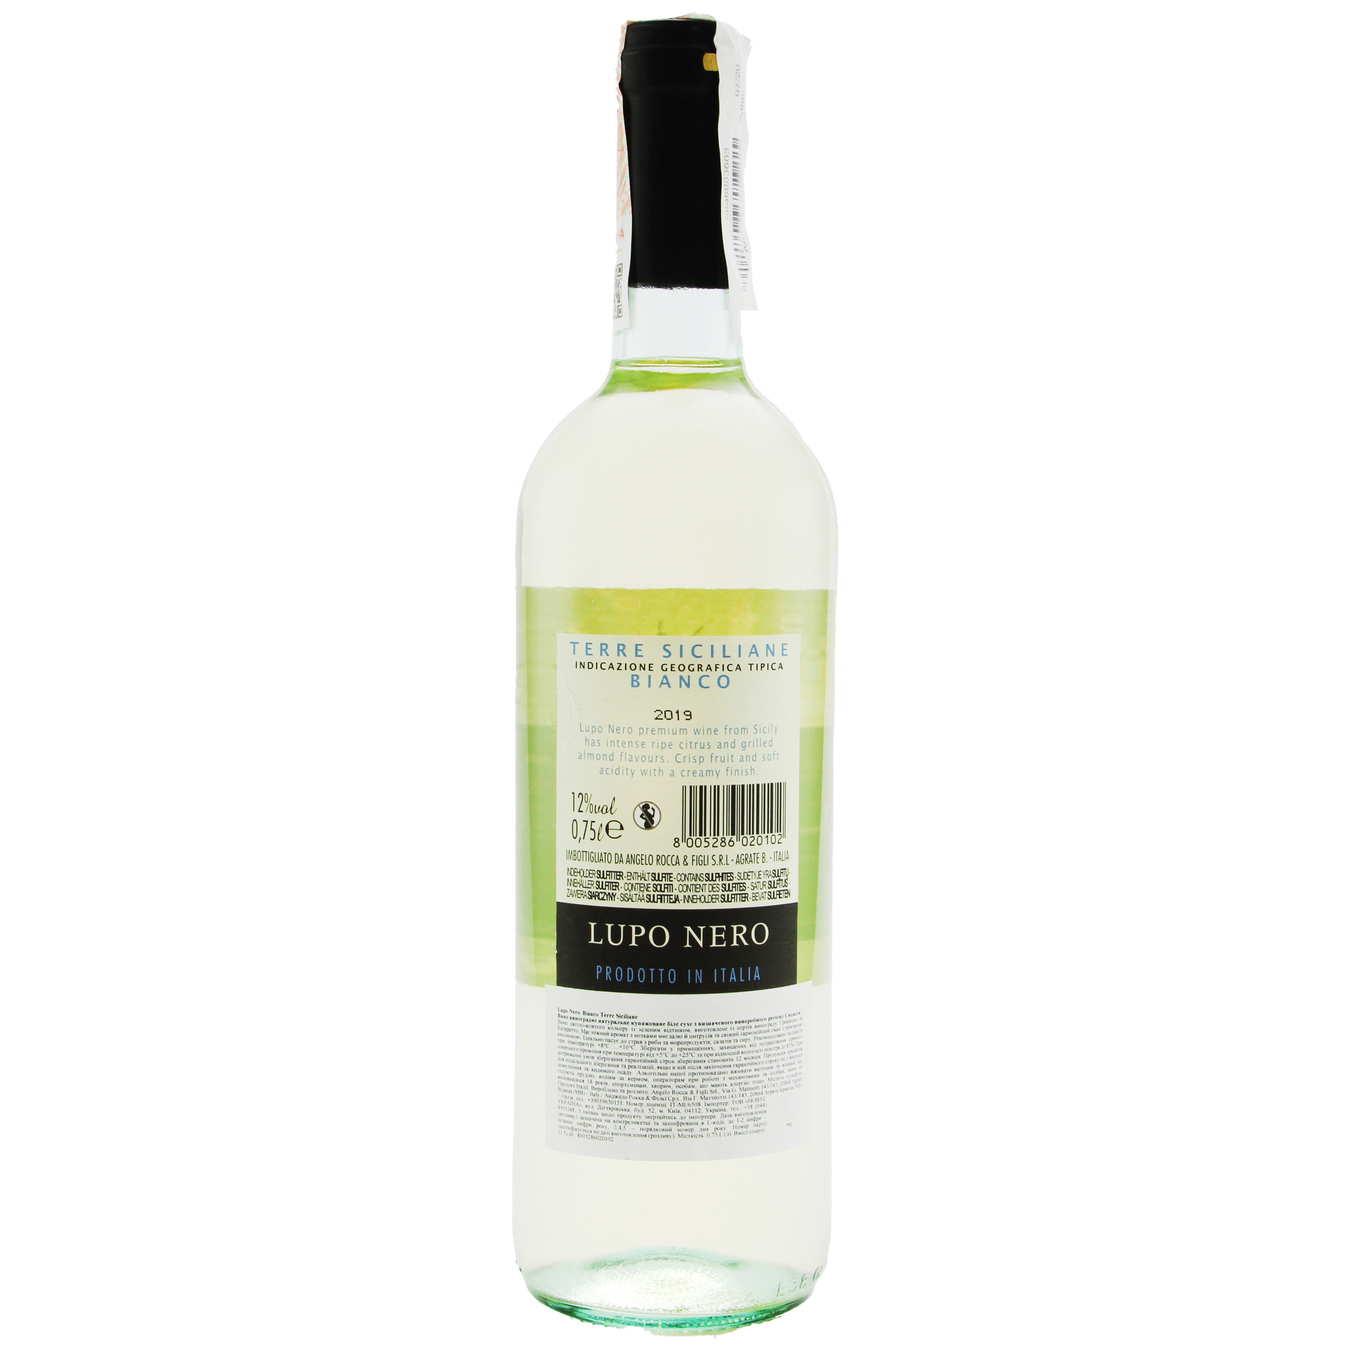 Lupo Nero Bianco Terre Siciliane IGT white dry wine 12% 0,75l 2